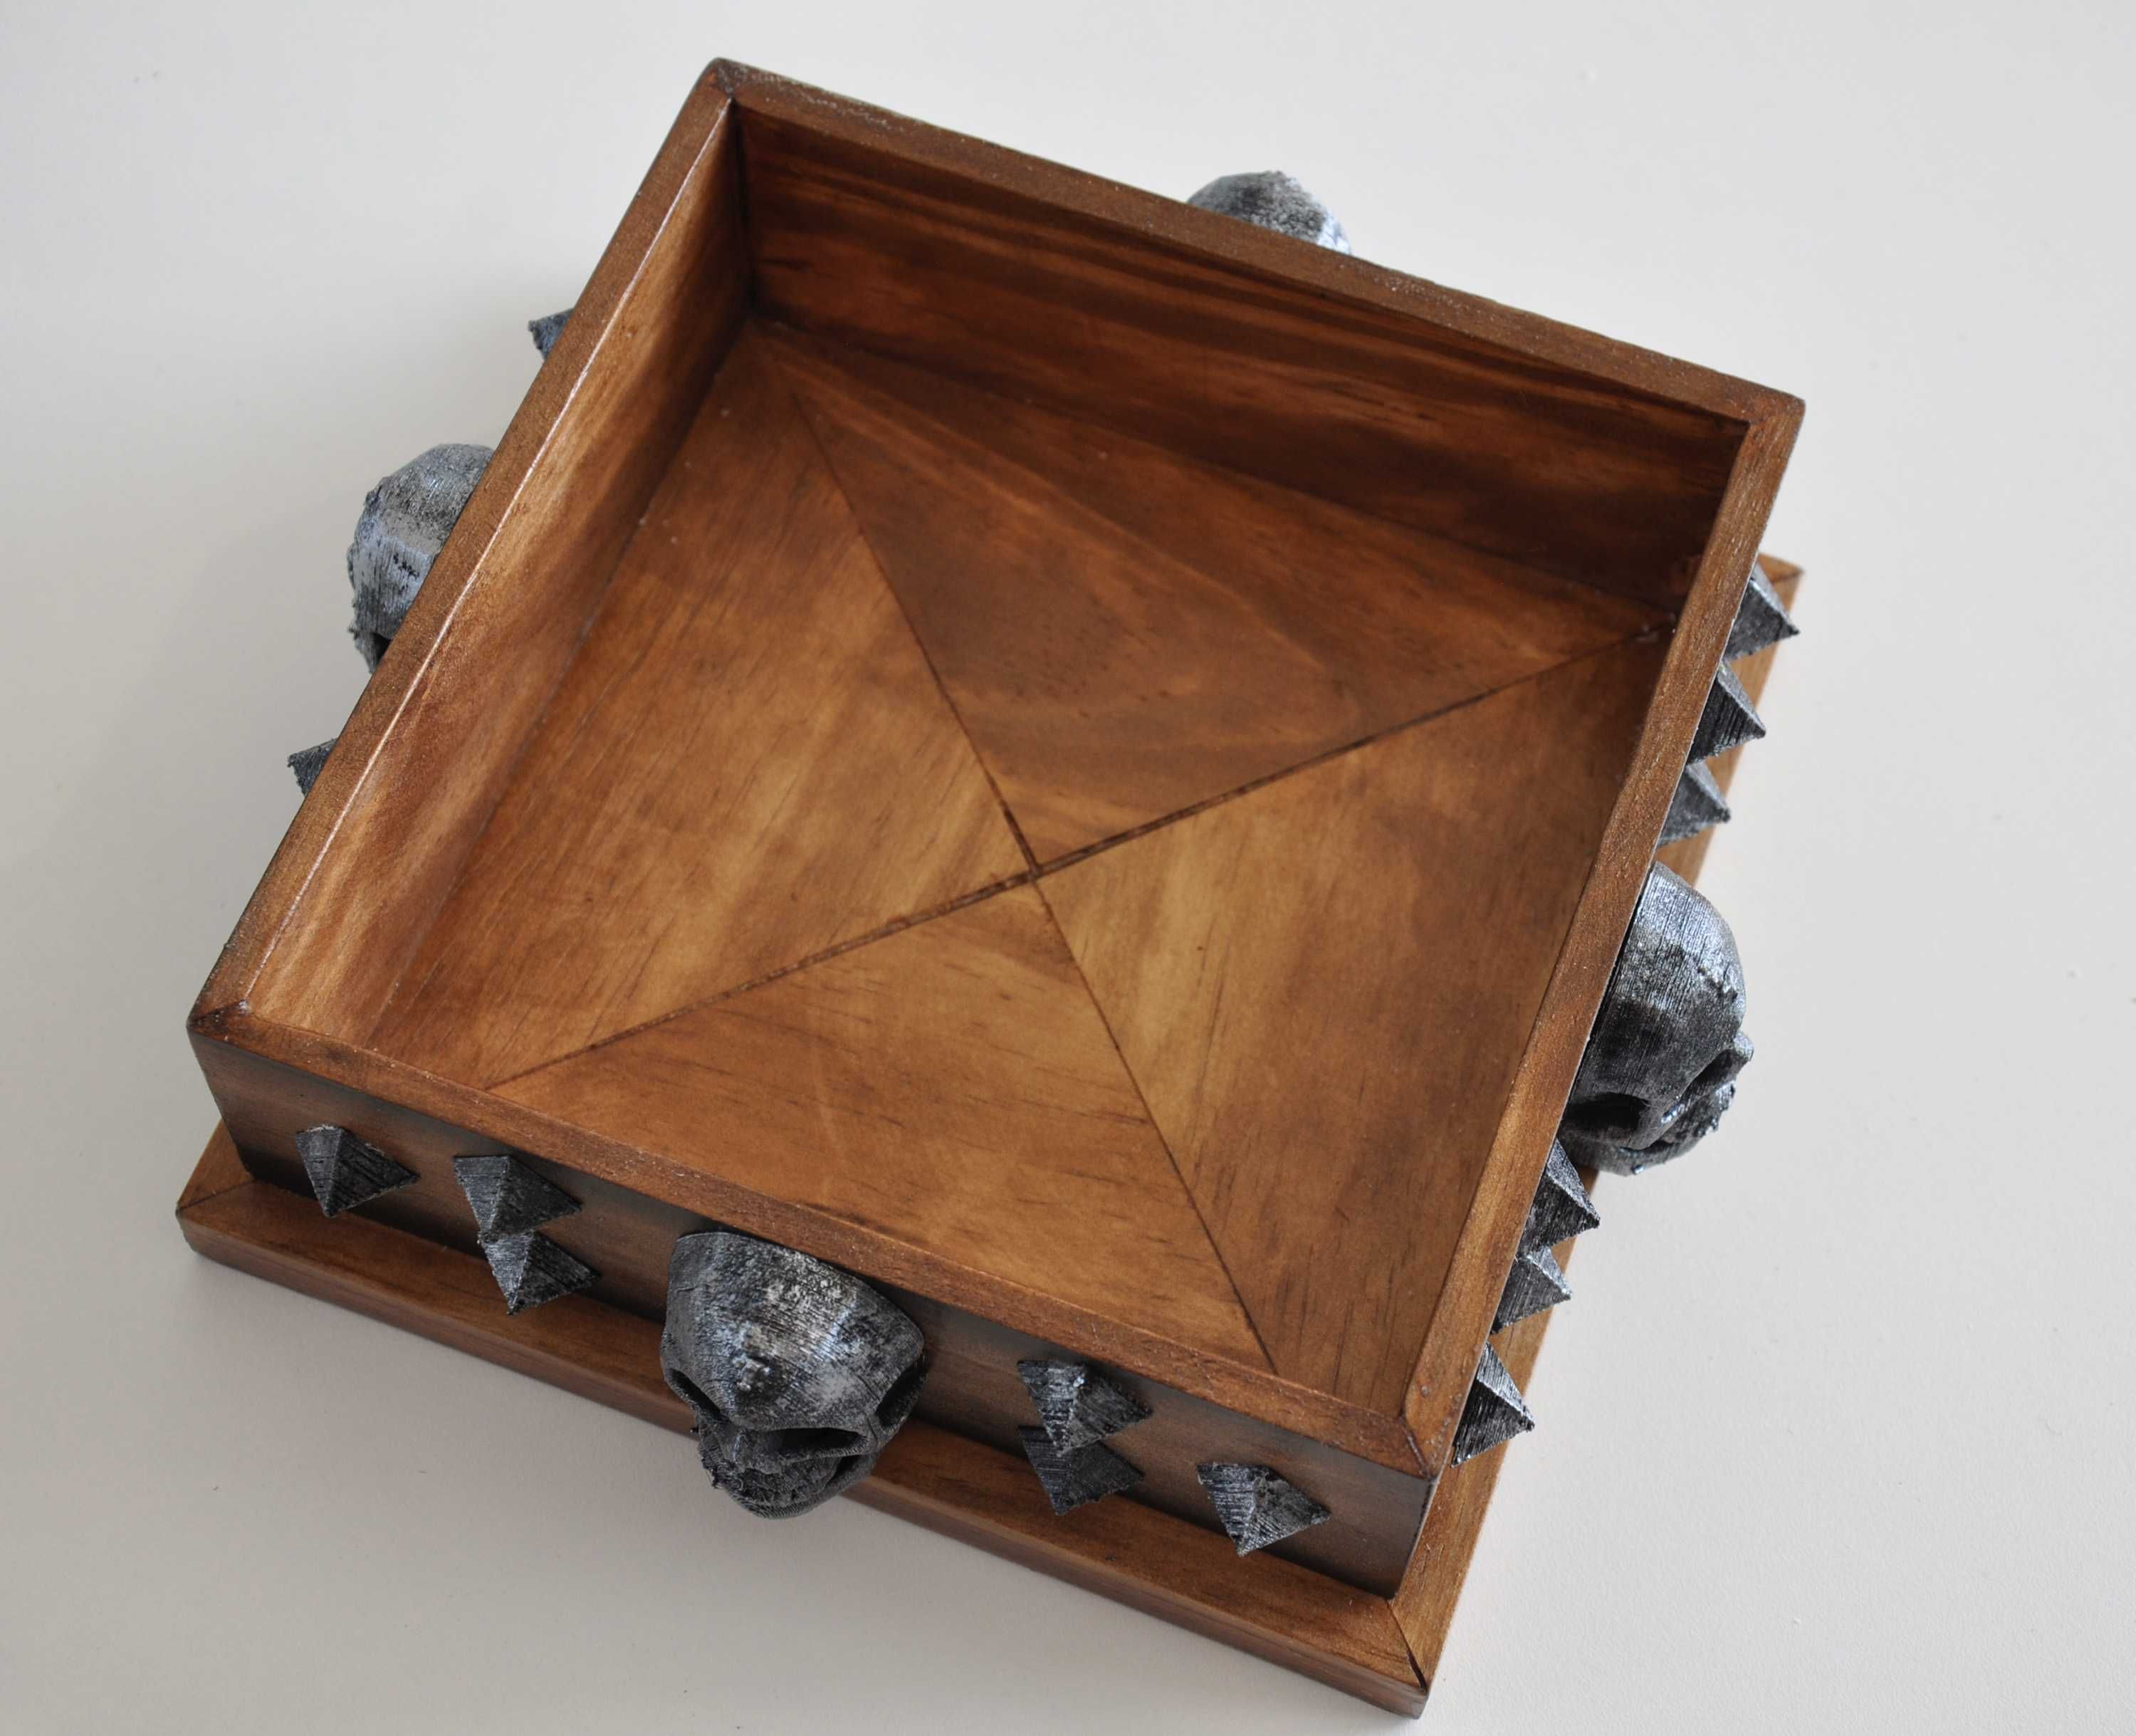 Caixa em madeira Caveira - artesanato gótico metal picos personalizada